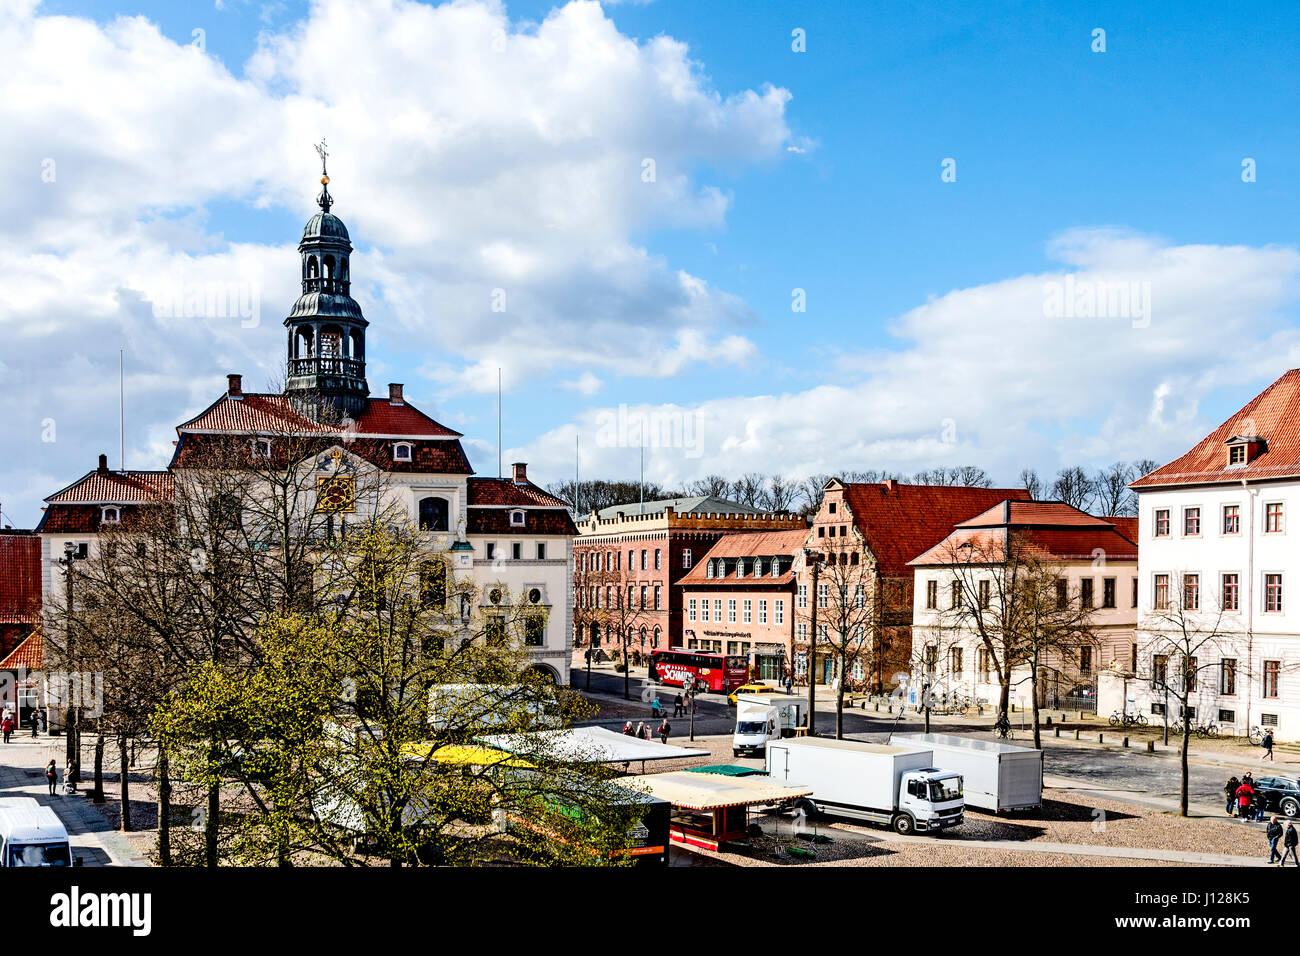 Lüneburg, Marktplatz mit Rathaus; Lueneburg, Market square with townhall Stock Photo